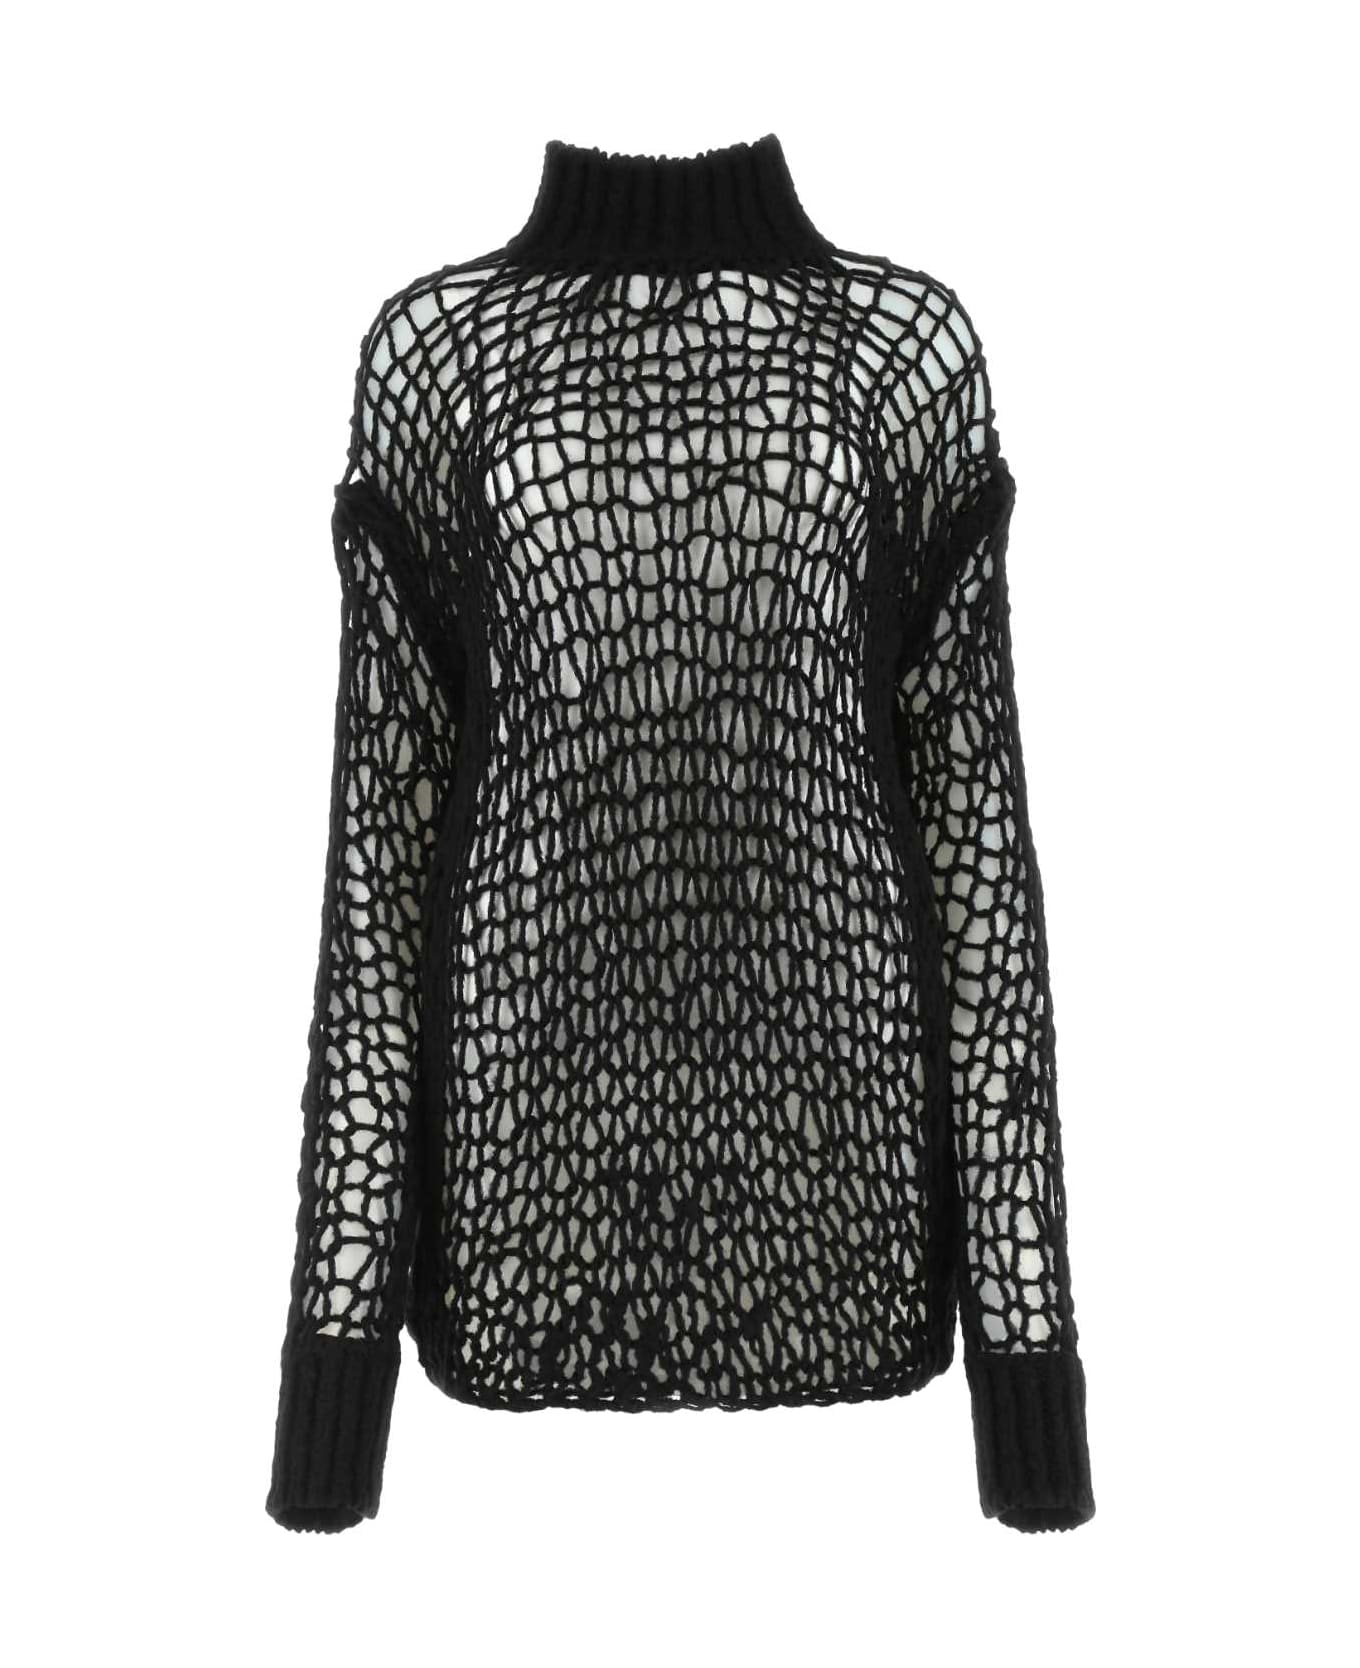 Ann Demeulemeester Black Wool Blend Sweater - 099 ニットウェア